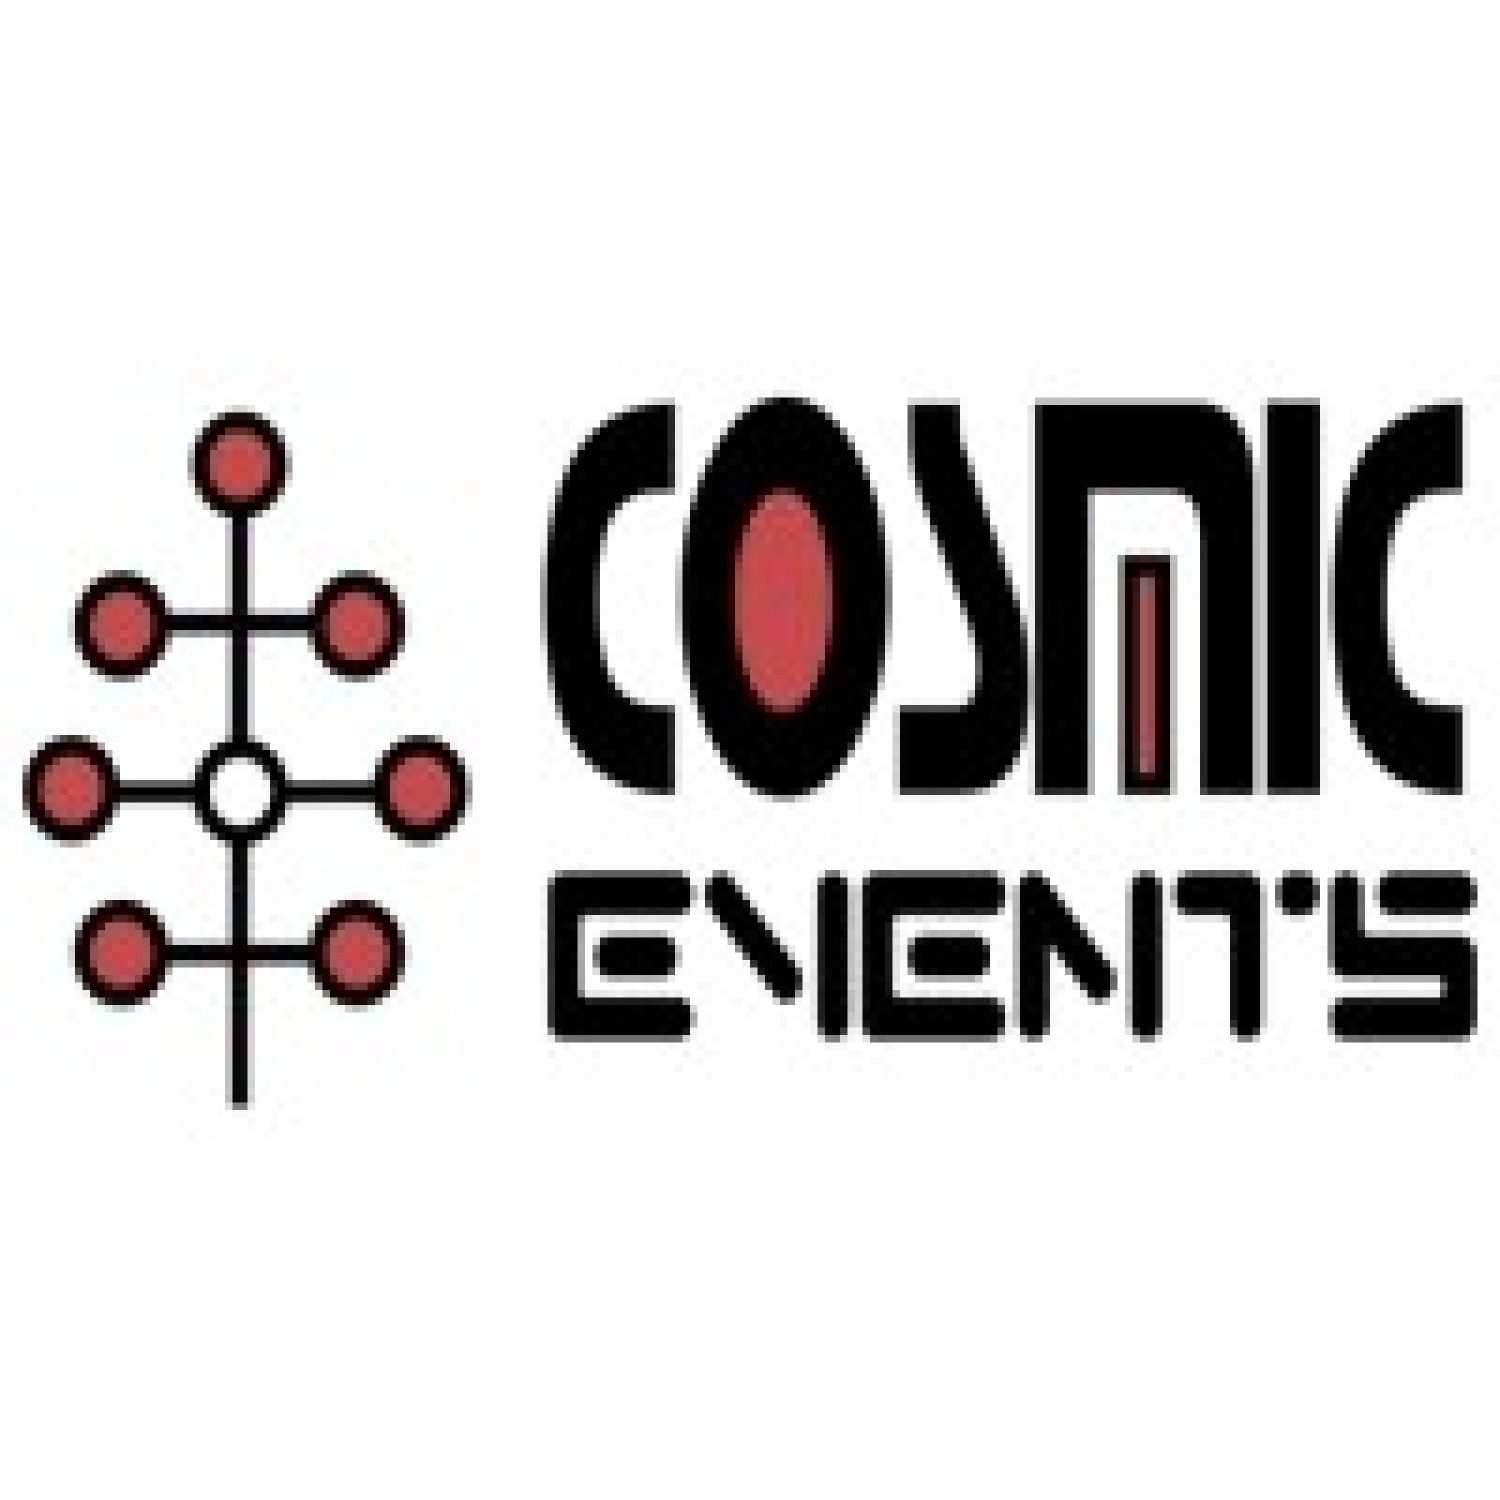 Cosmic events